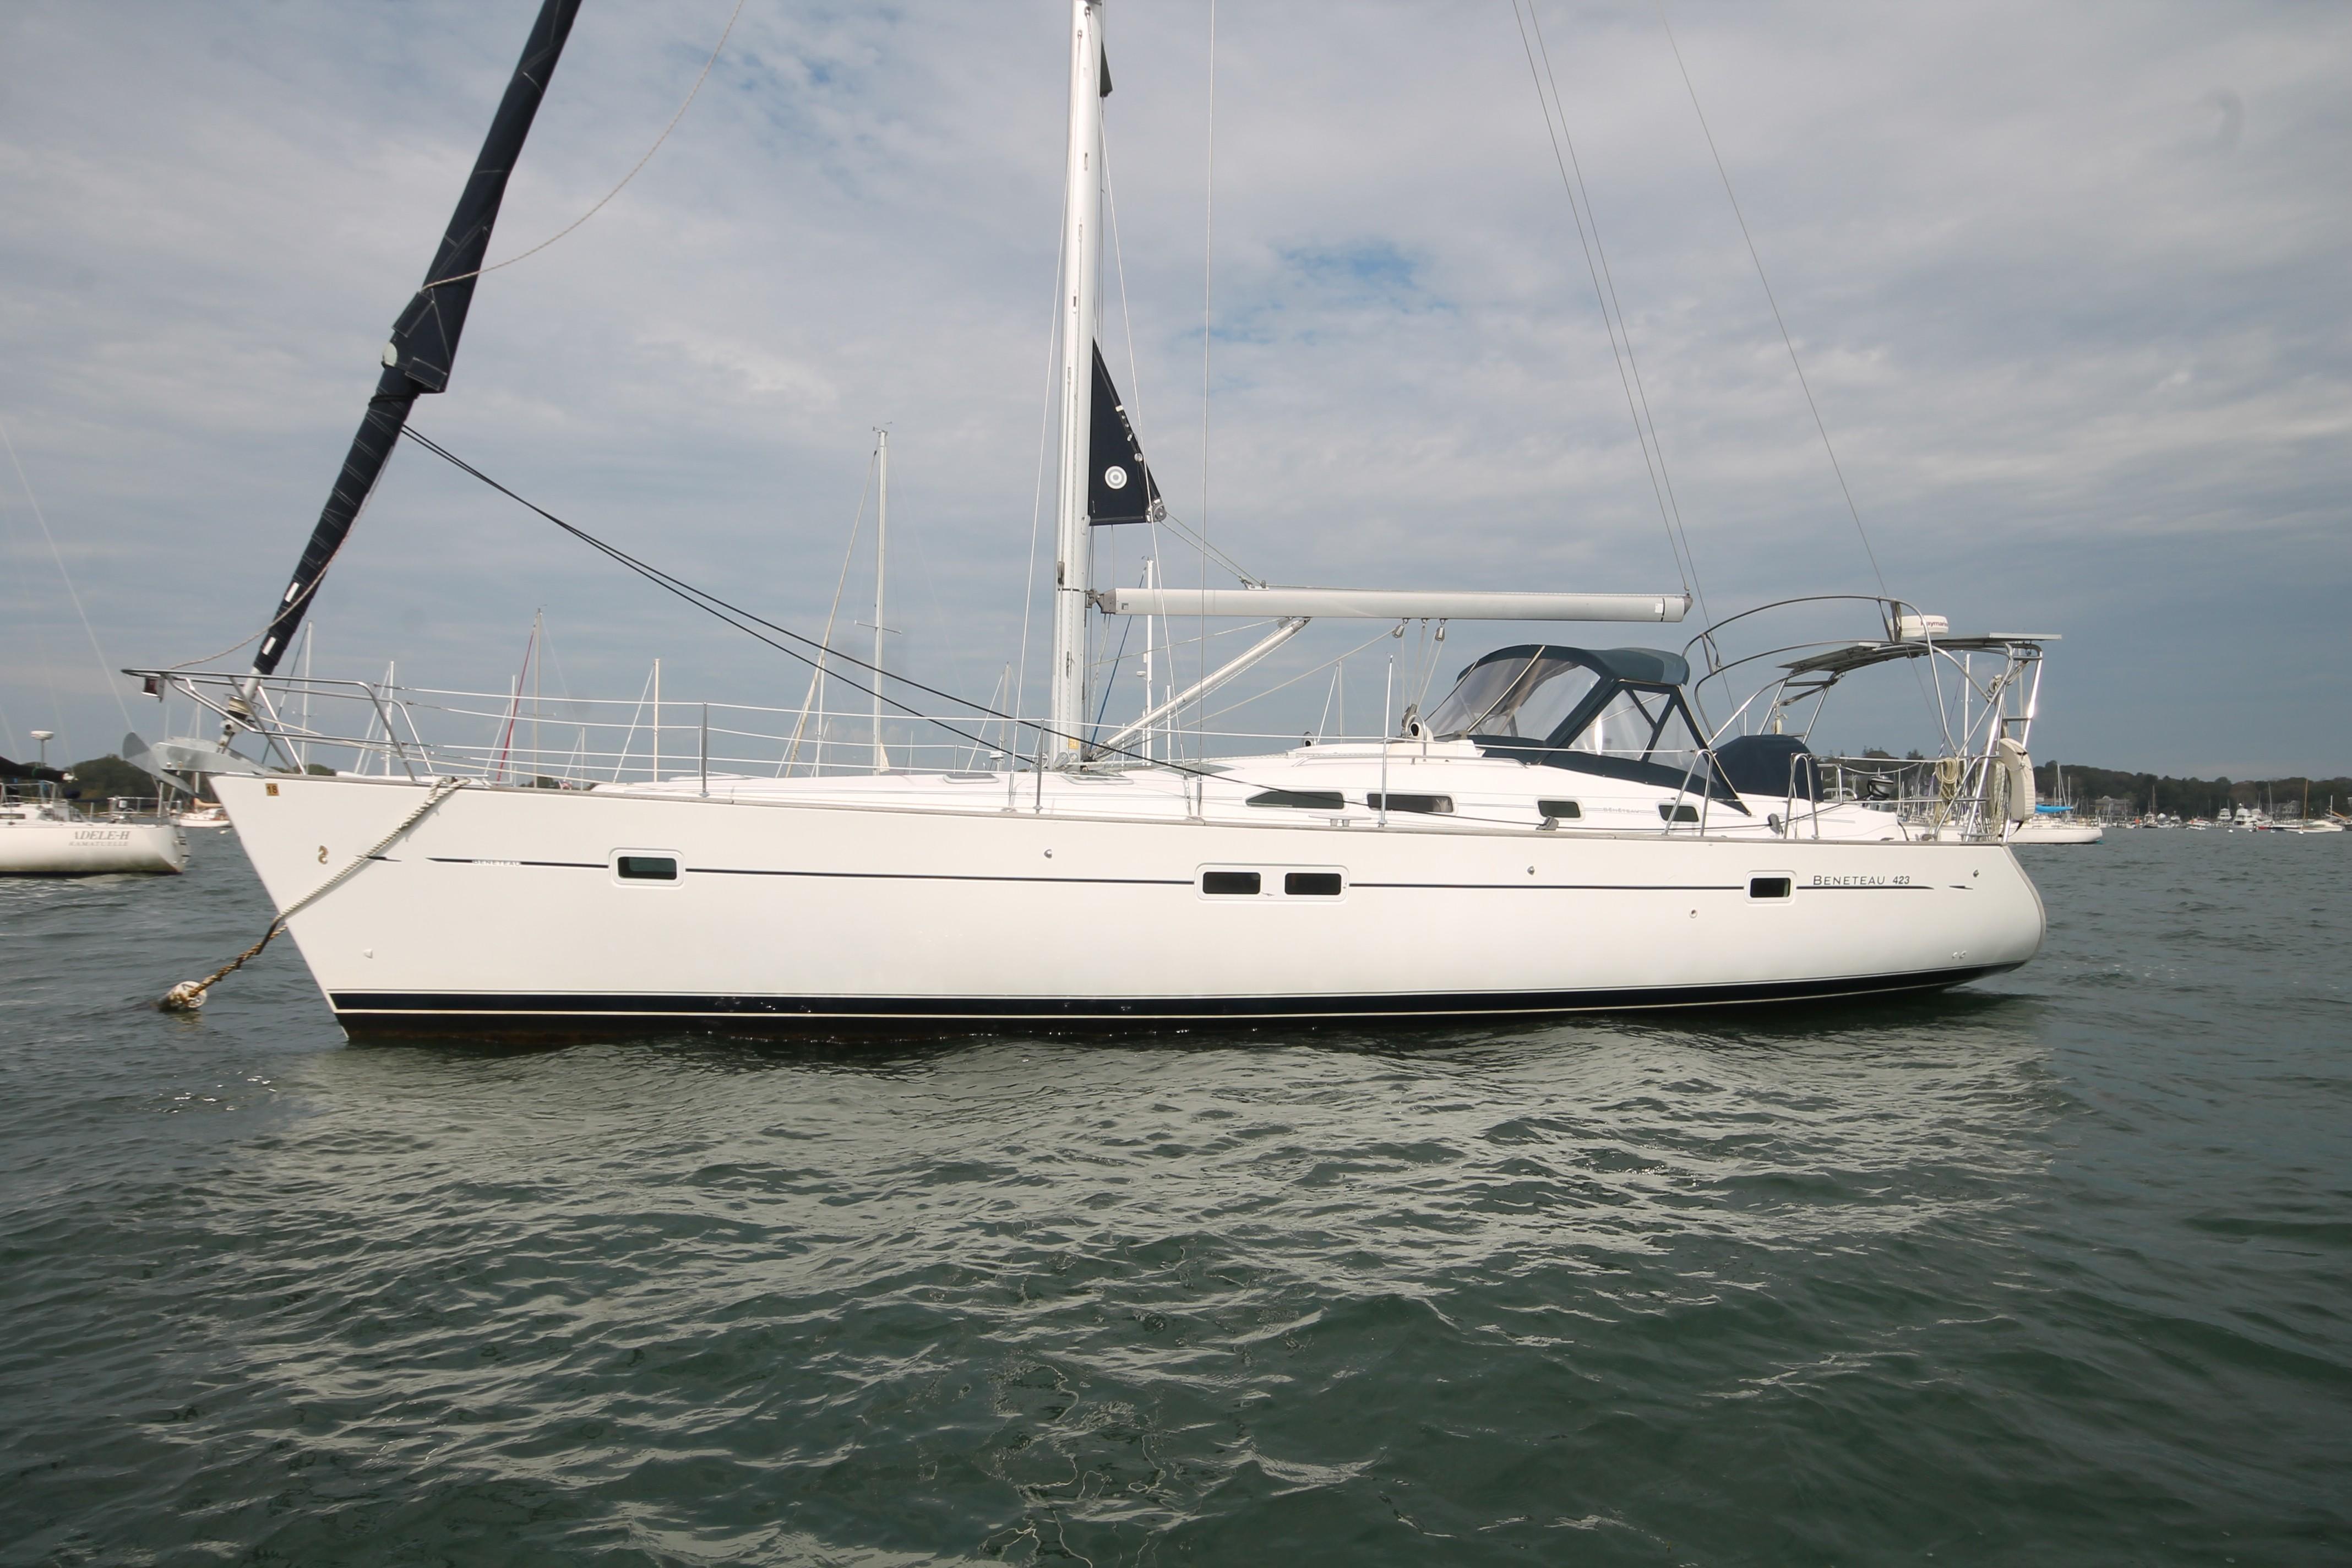 42 foot sailing yacht